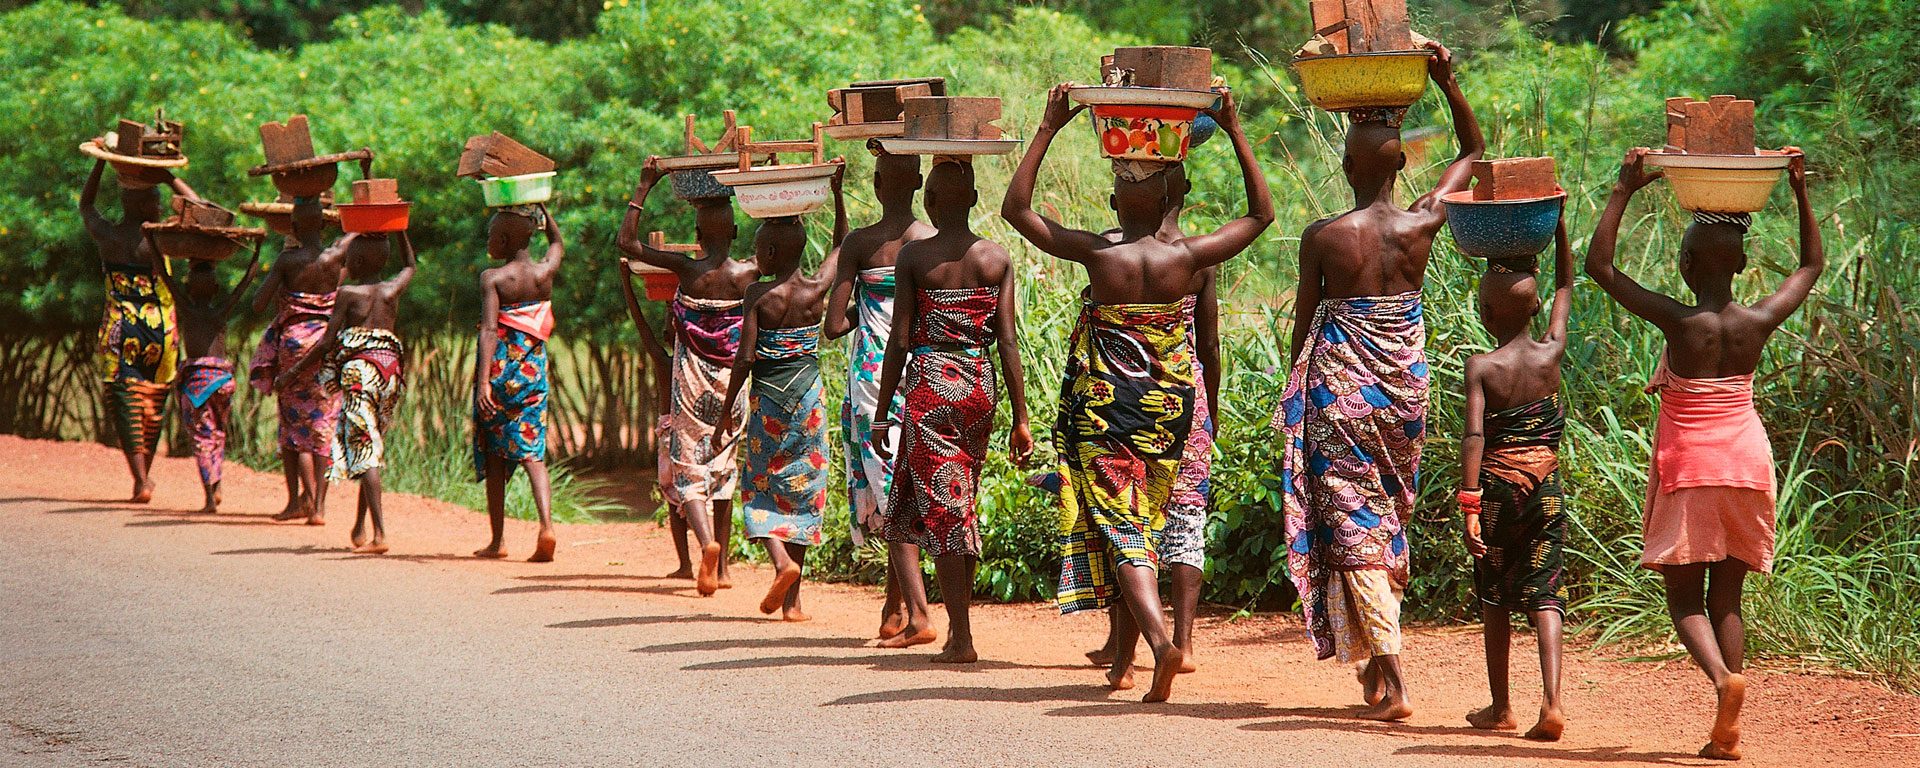 Women walking along road near Cotonou, Benin